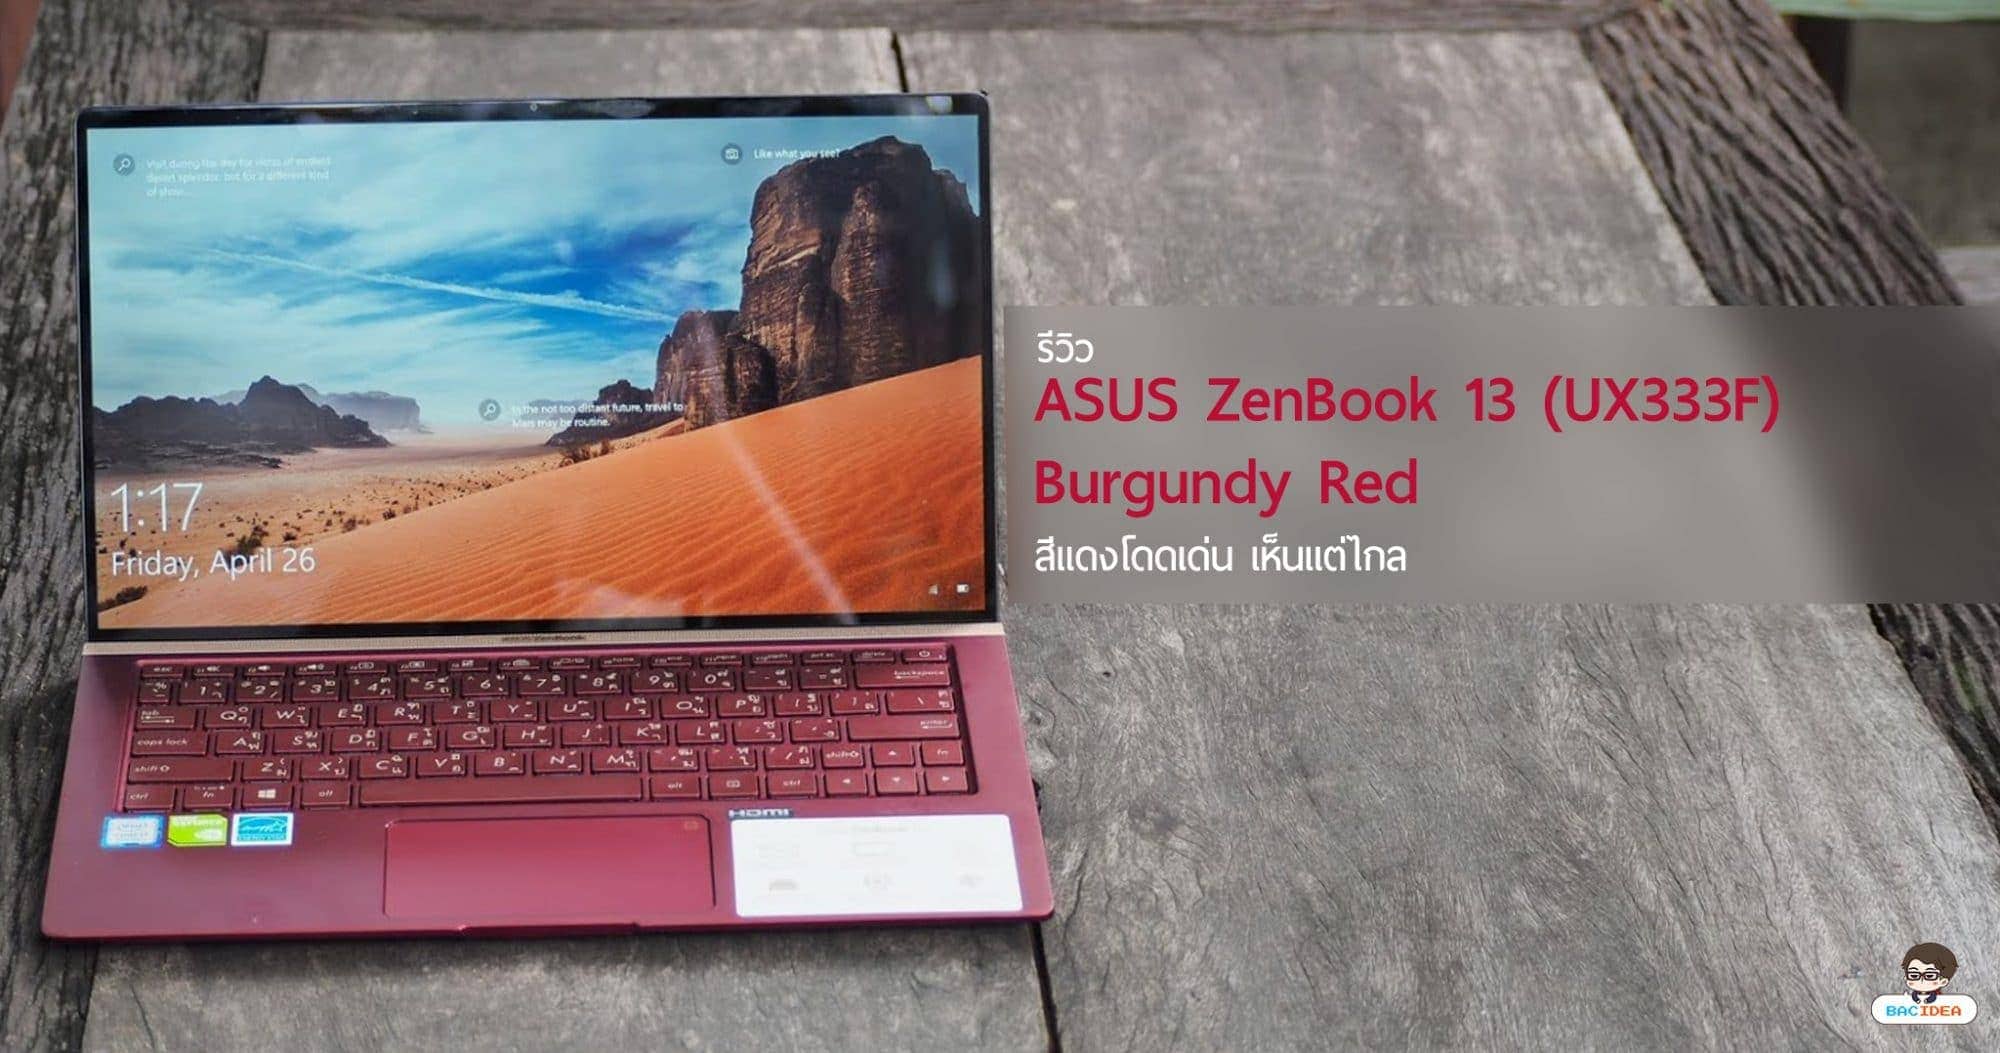 รีวิว ASUS ZenBook 13 (UX333F) Burgundy Red สีแดงโดดเด่น เห็นแต่ไกล 1